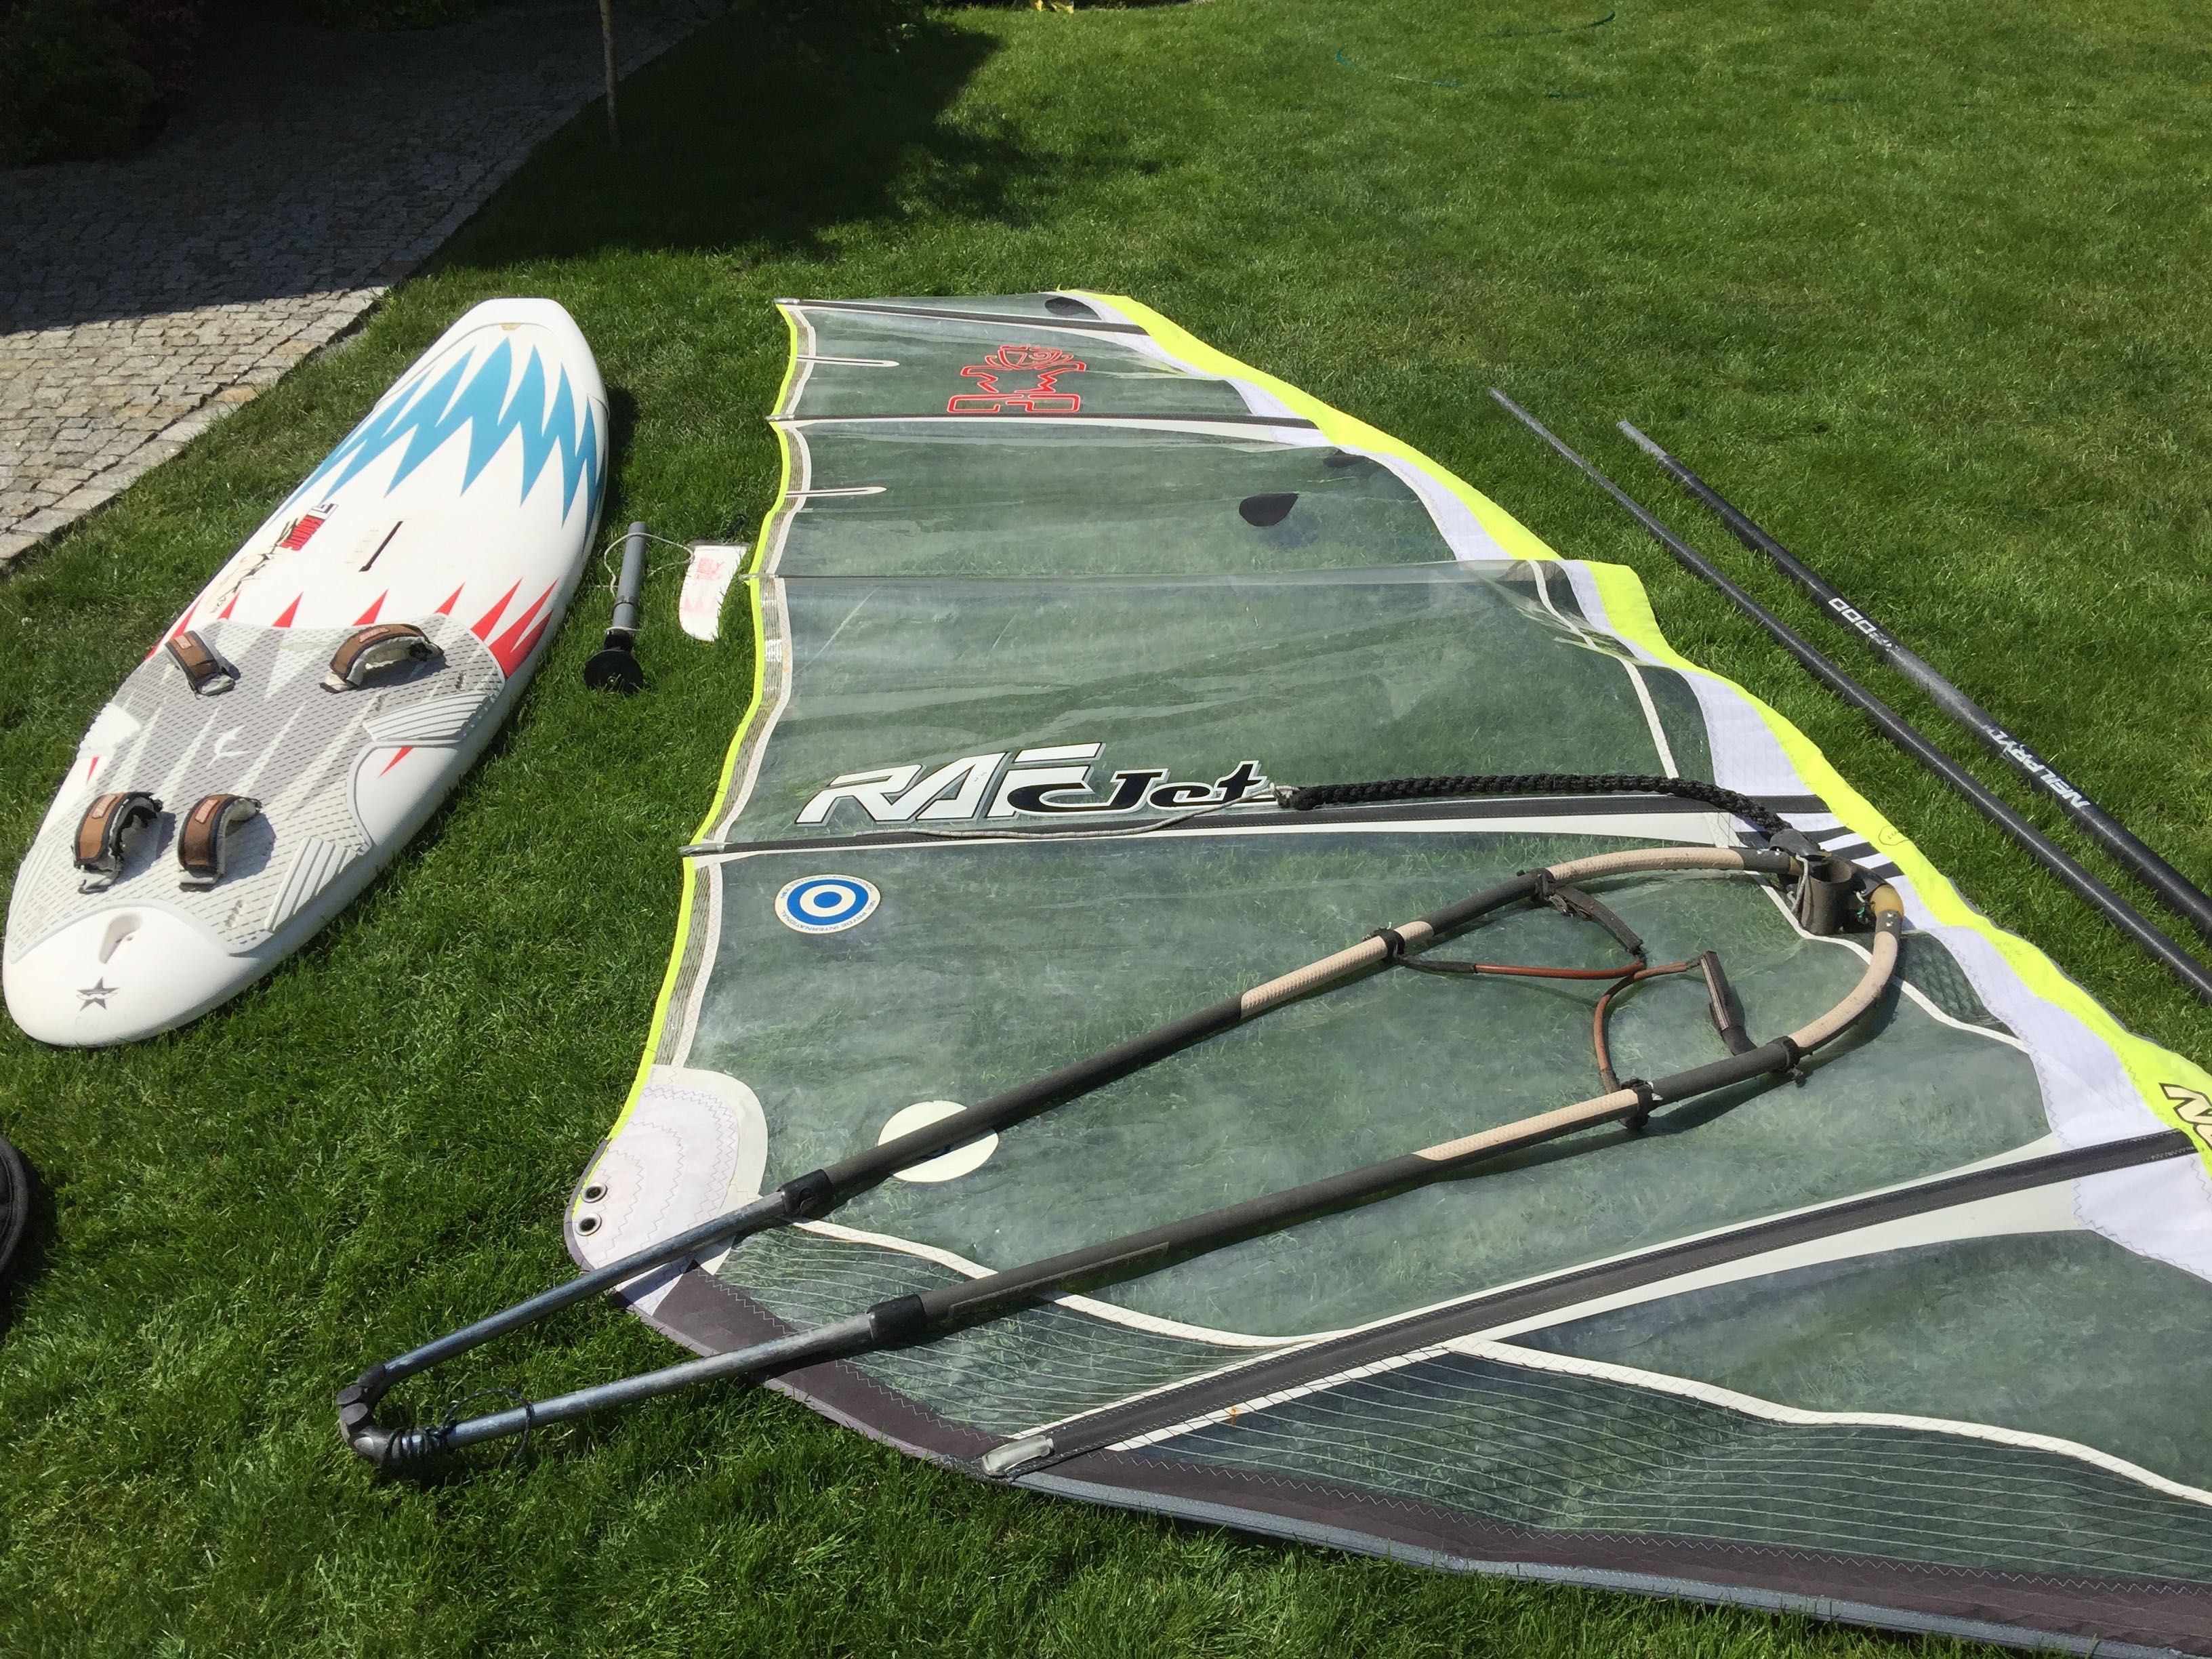 Zestaw windsurfingowy